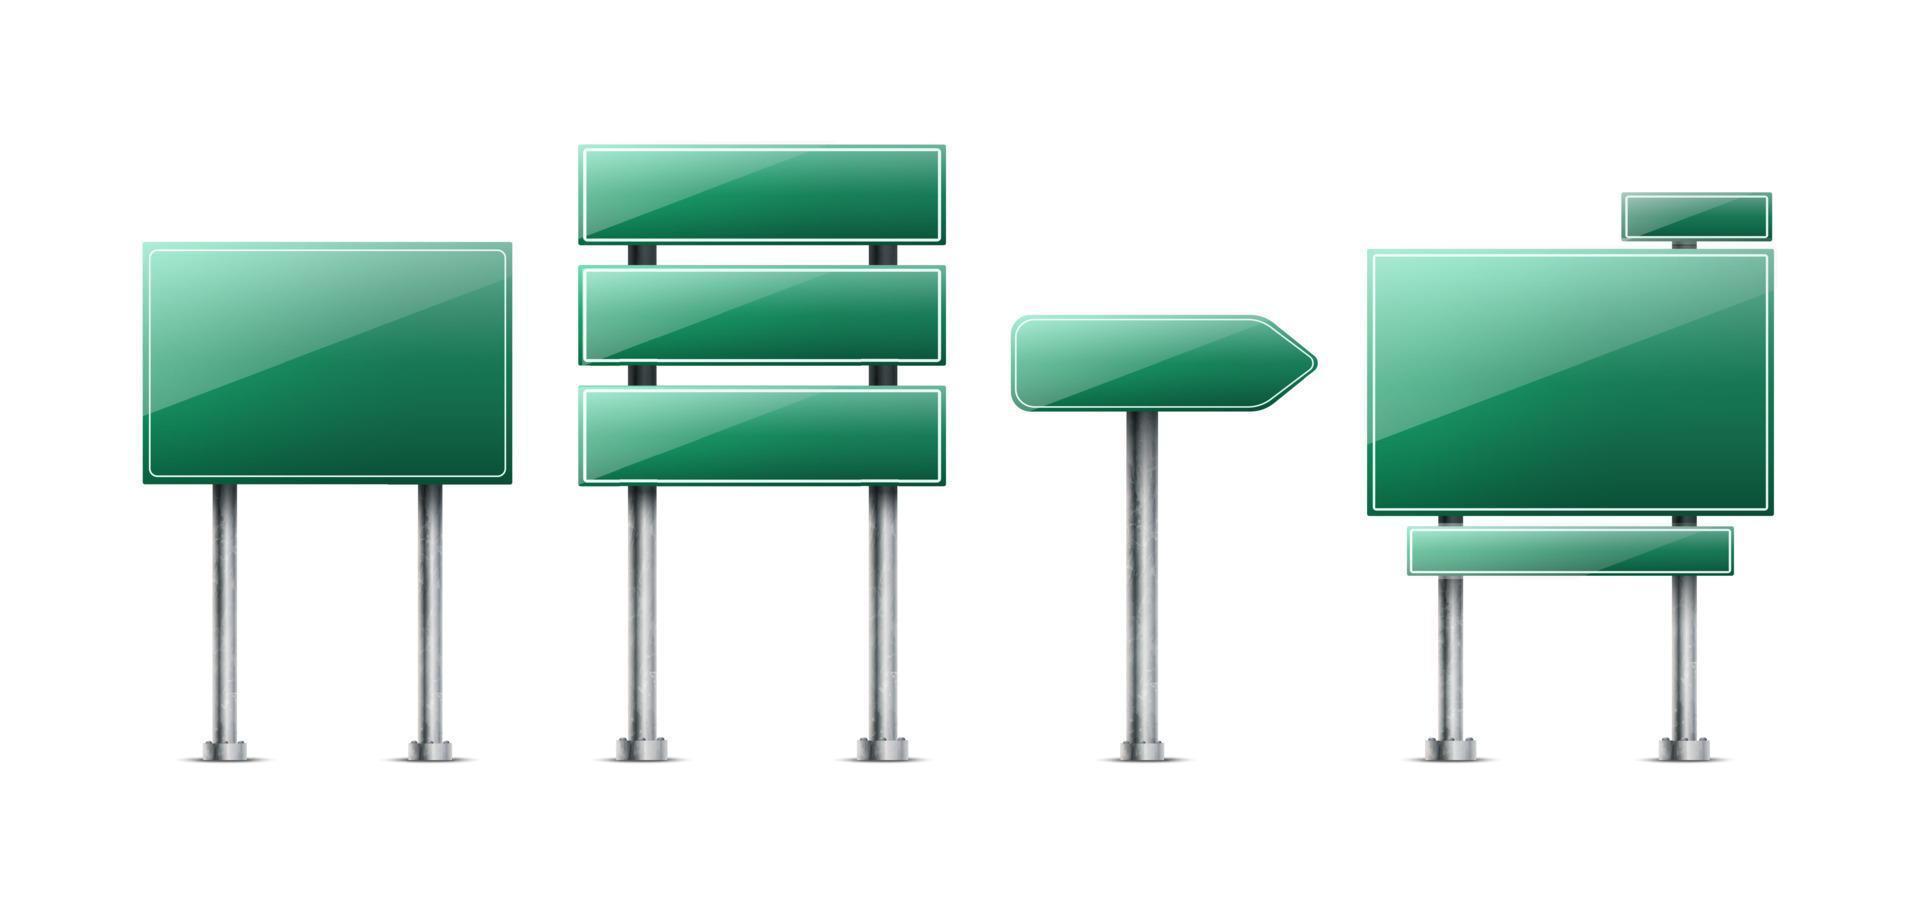 Vektor set realistische grüne Verkehrszeichen. isoliert auf weißem Hintergrund.